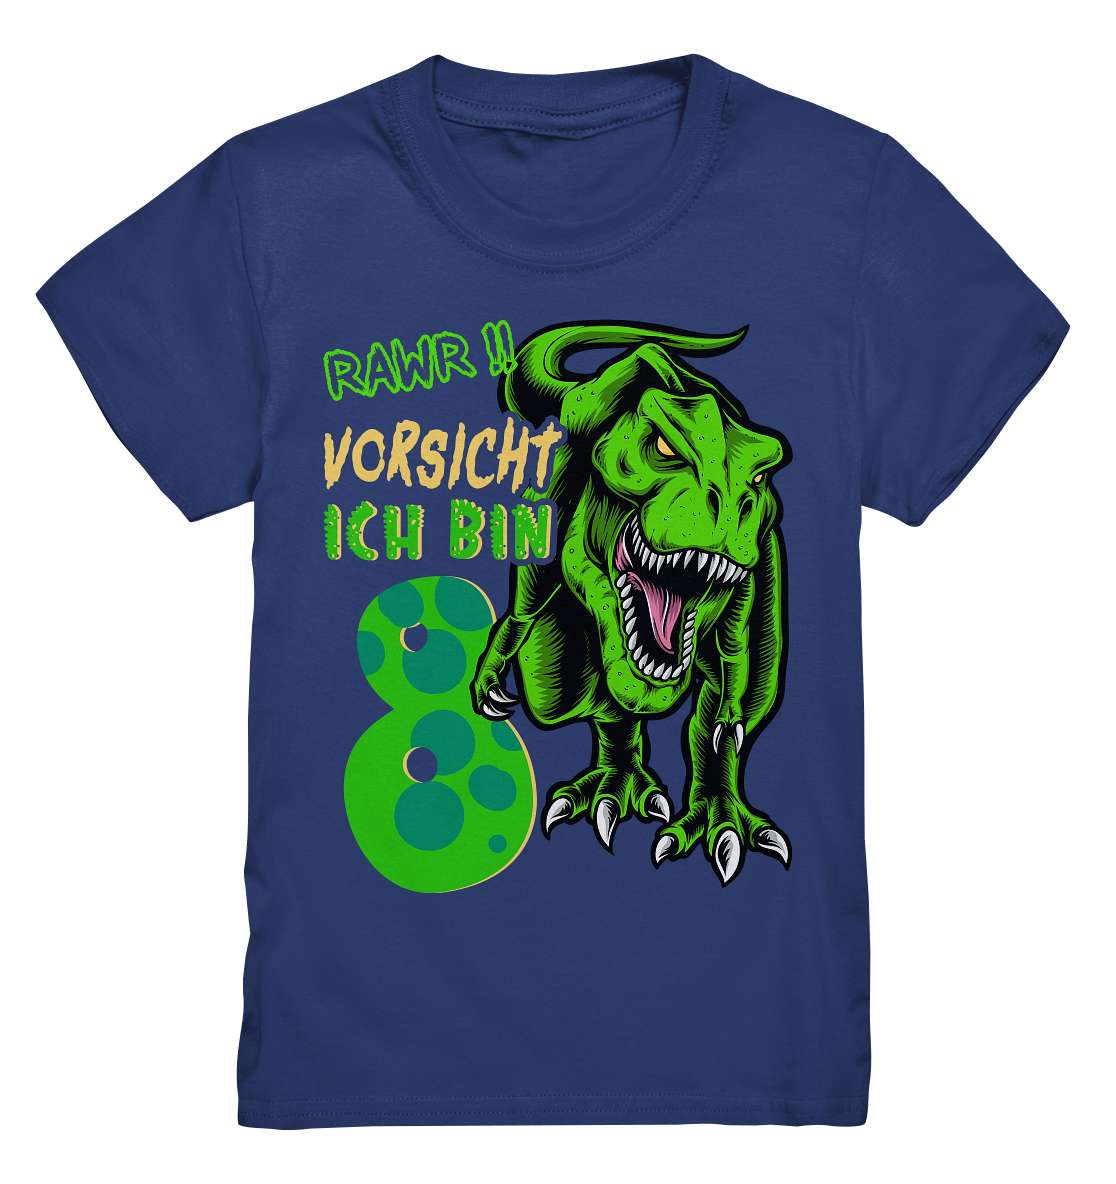 8. Kinder Geburtstag - T-REX Dinosaurier - Ich bin 8 Jahre - Geschenk - Kids Premium Shirt